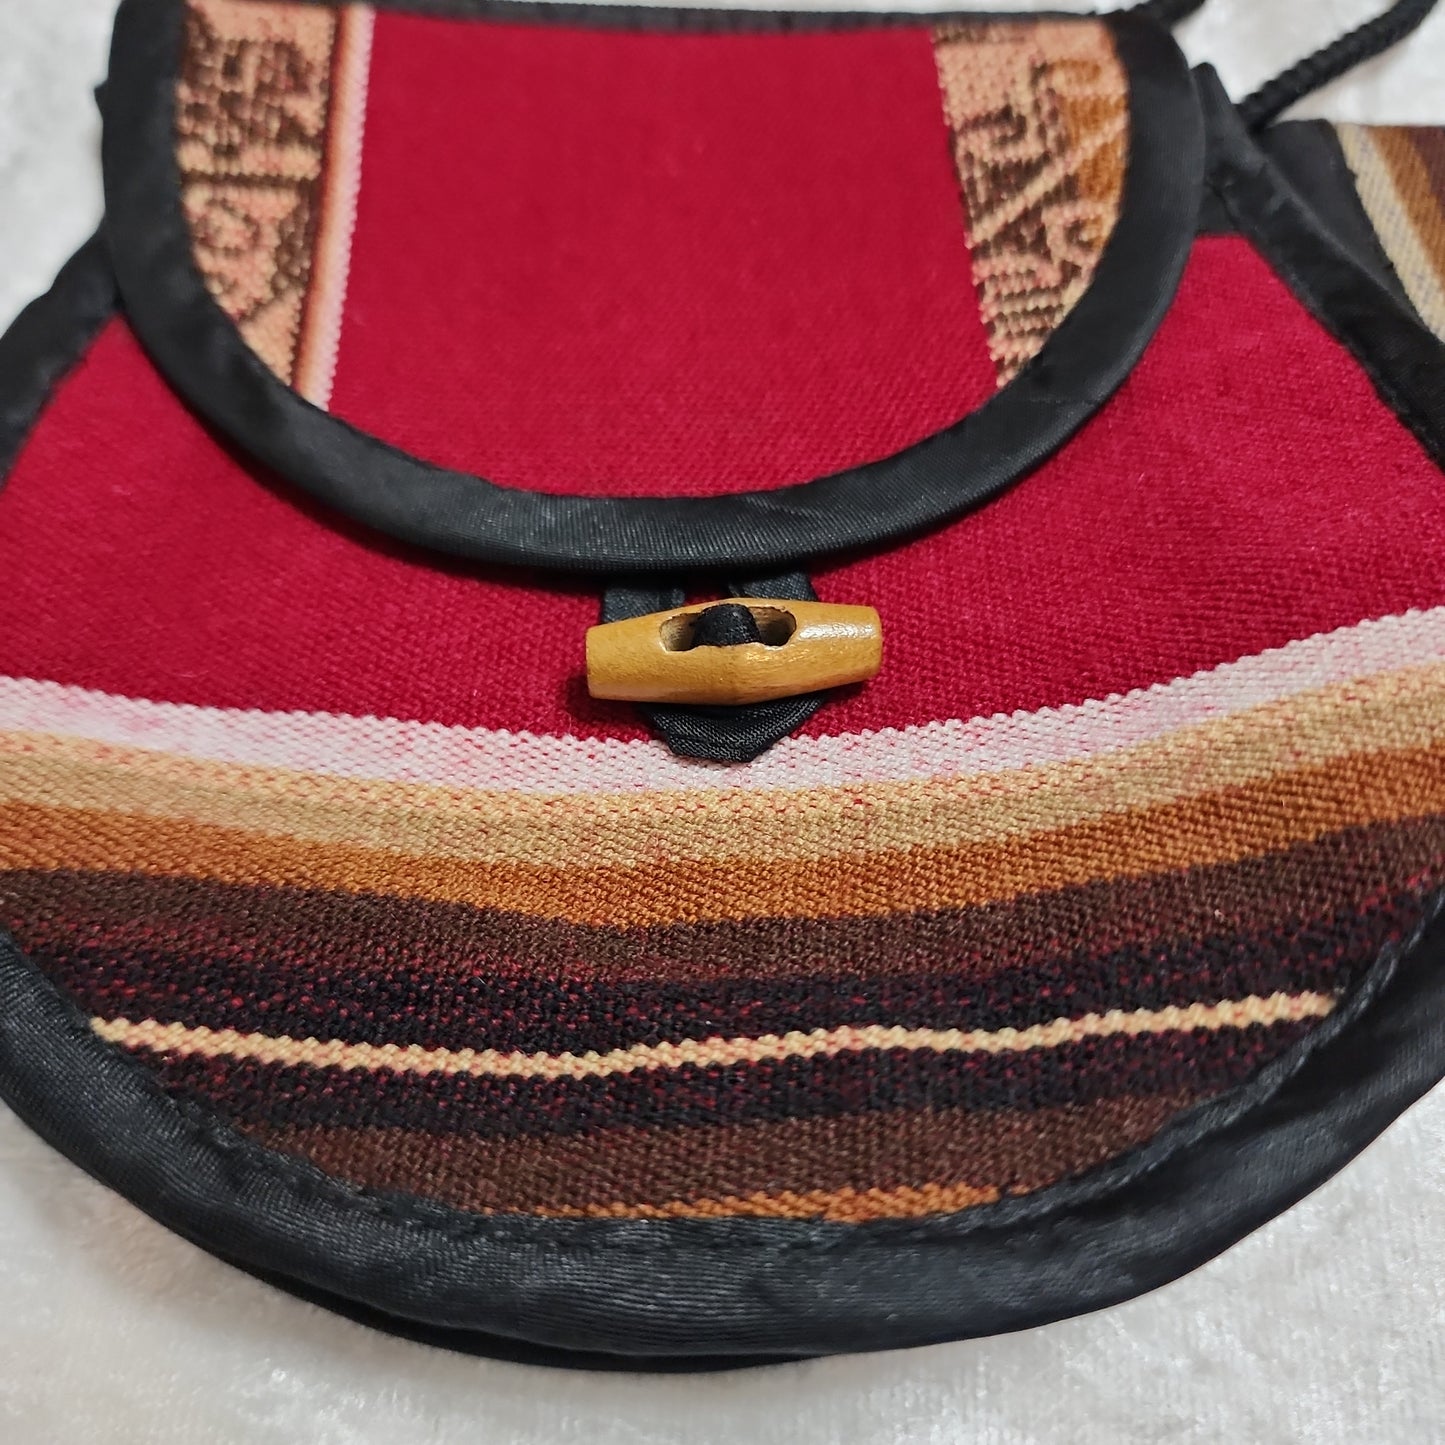 Aguayo coin purse set